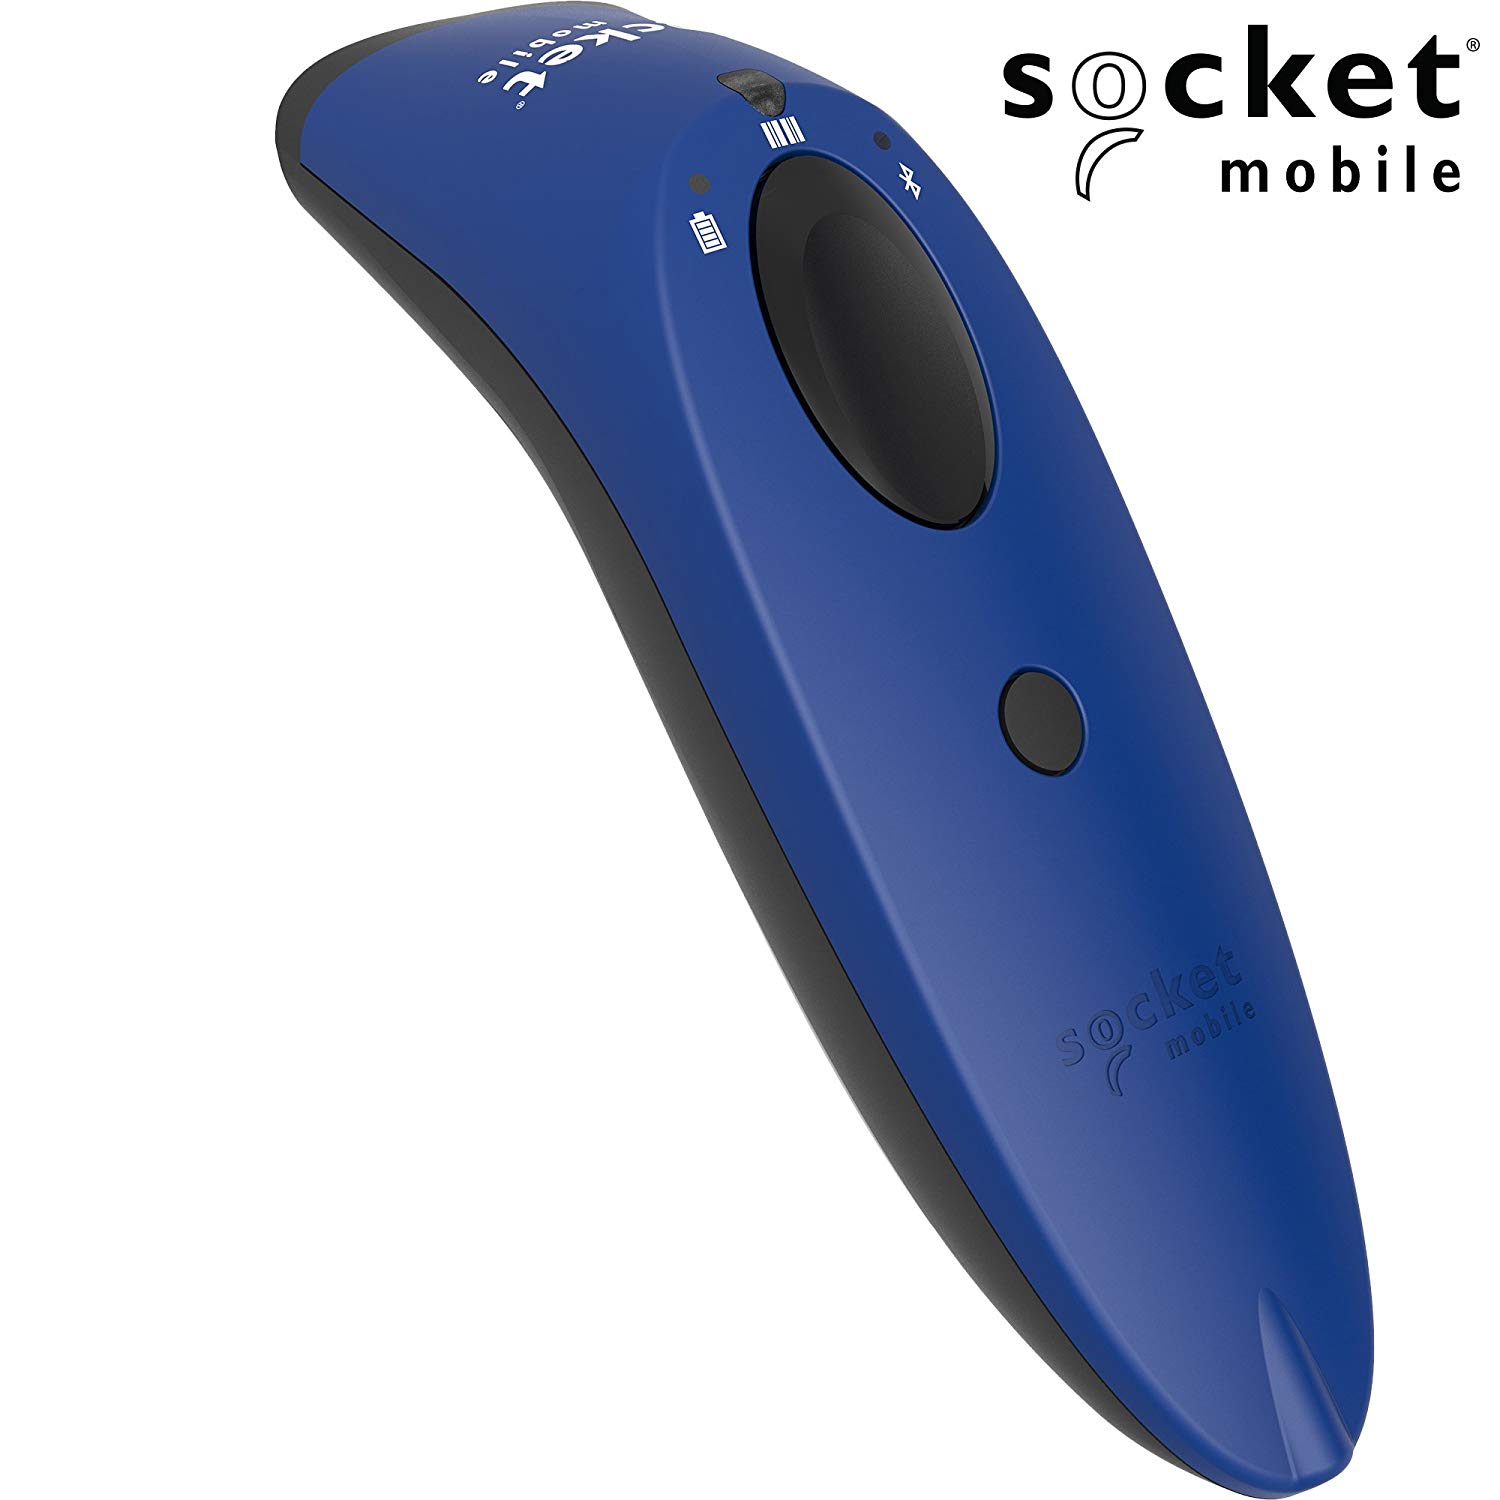 socketscan S740, 2d escáner de código de barras, Azul